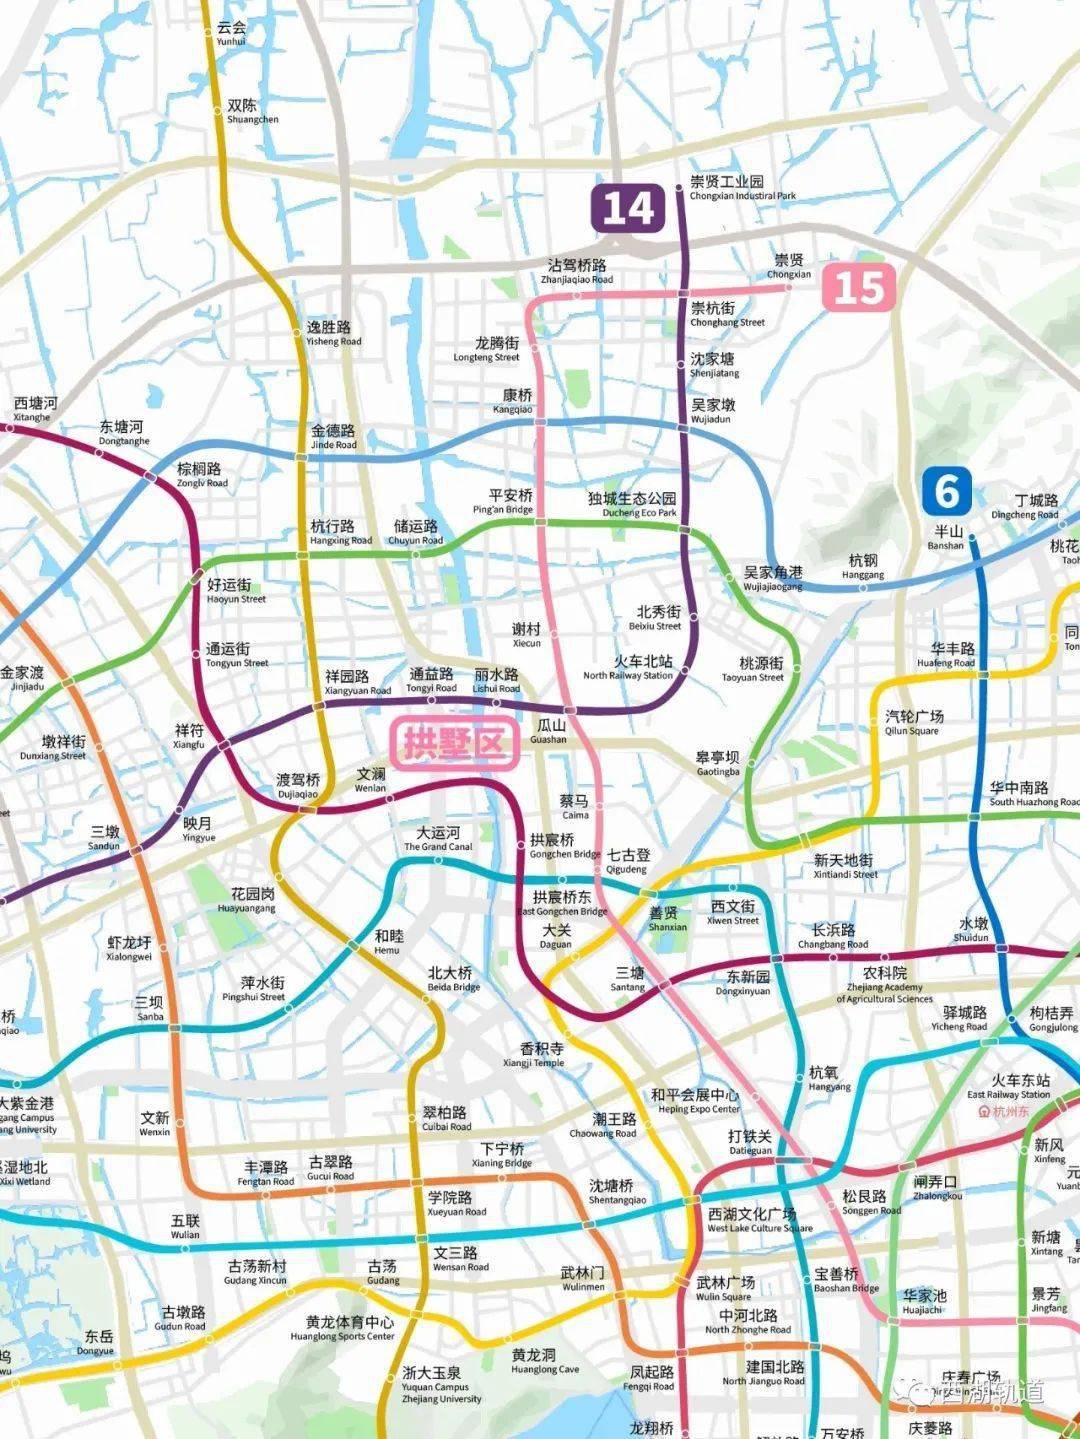 杭州地铁2035年规划线路图(网友最新版)